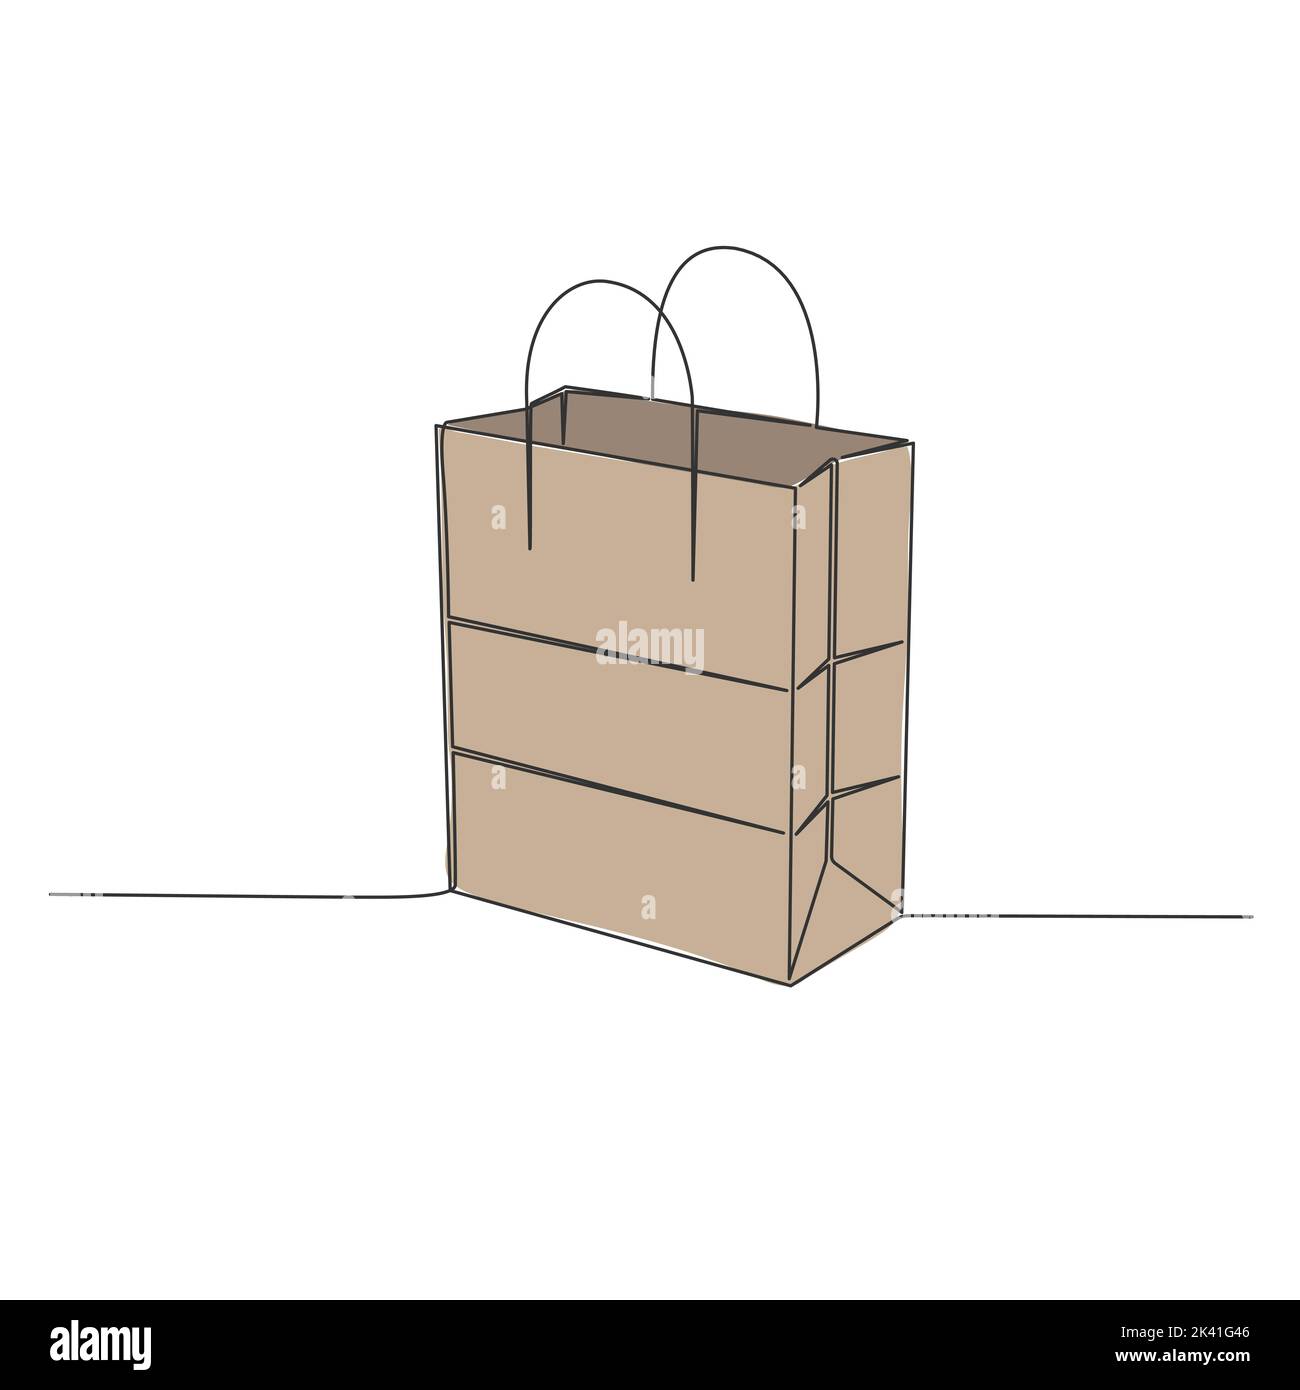 disegno a linea singola del sacchetto di carta marrone isolato su fondo bianco, illustrazione vettoriale del sacchetto di shopping di arte di linea Illustrazione Vettoriale